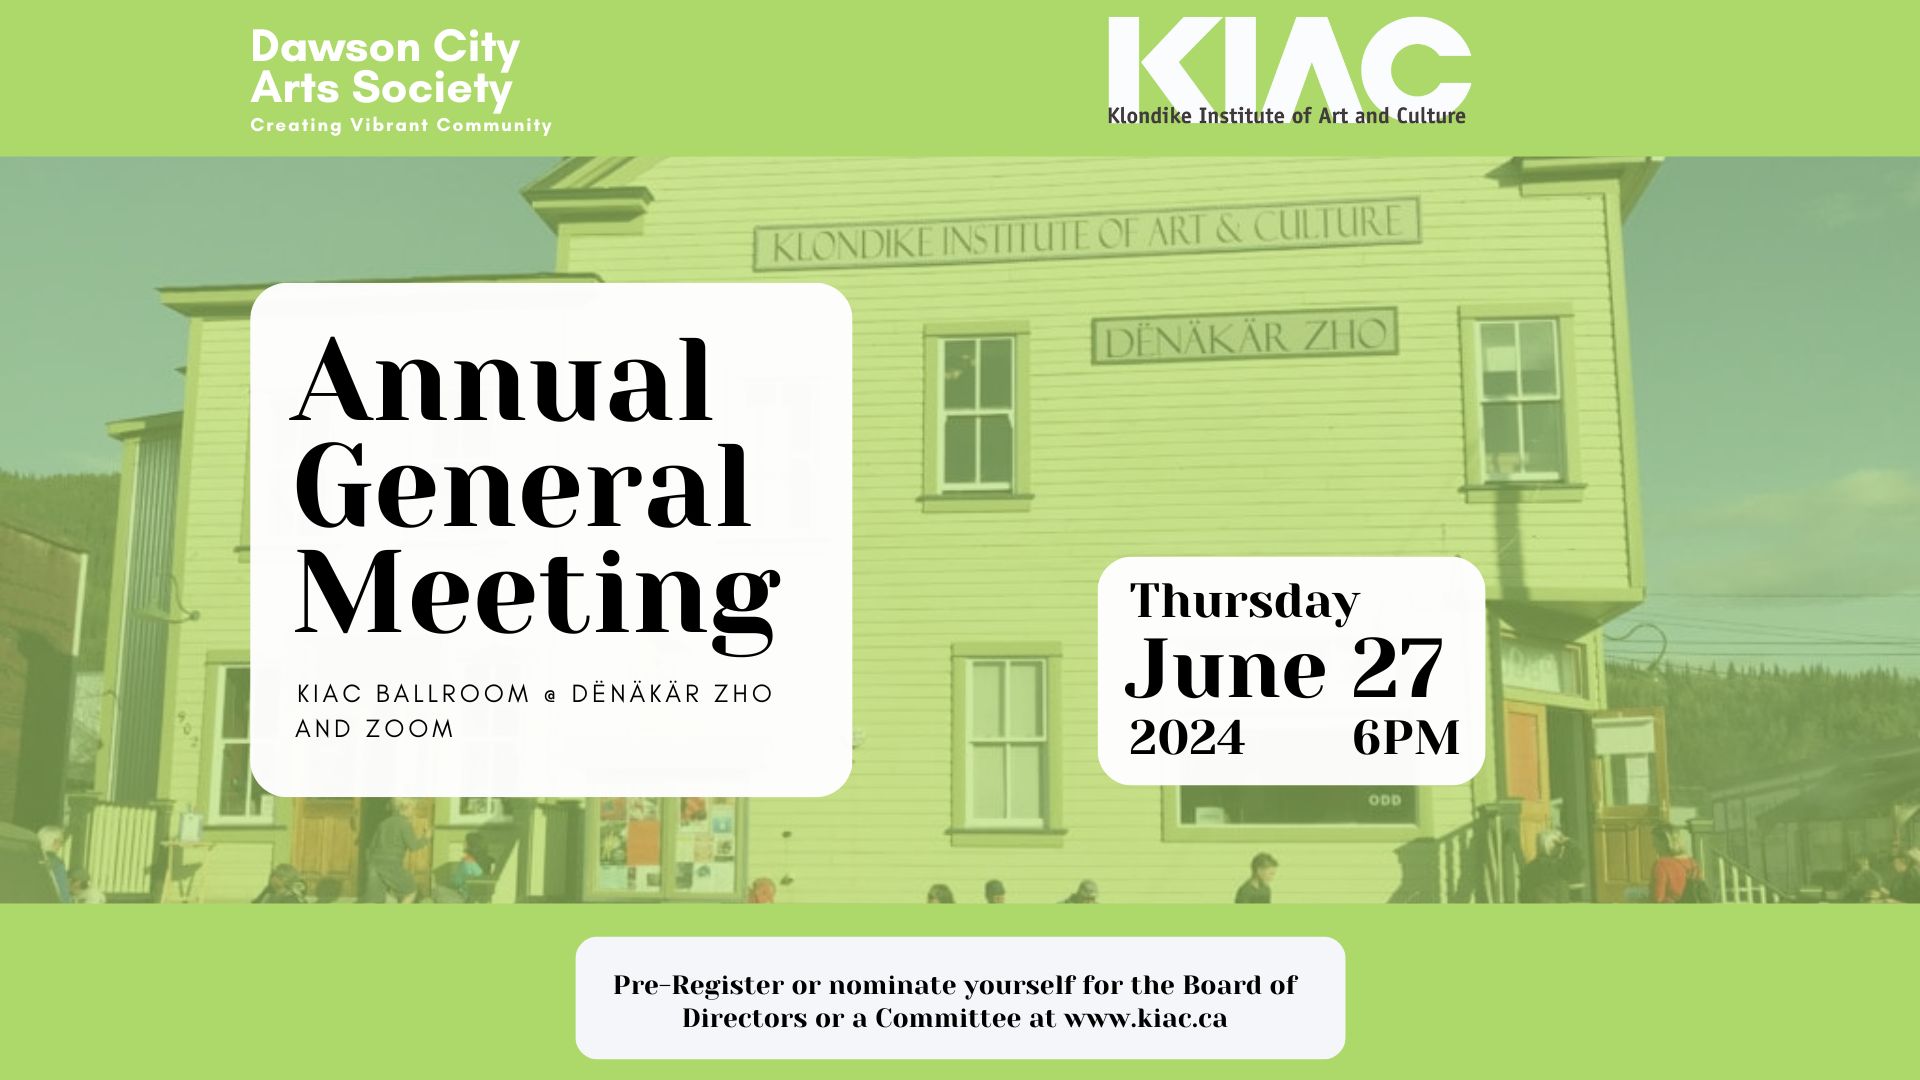 Annual General Meeting: June 27 2024 at 6pm